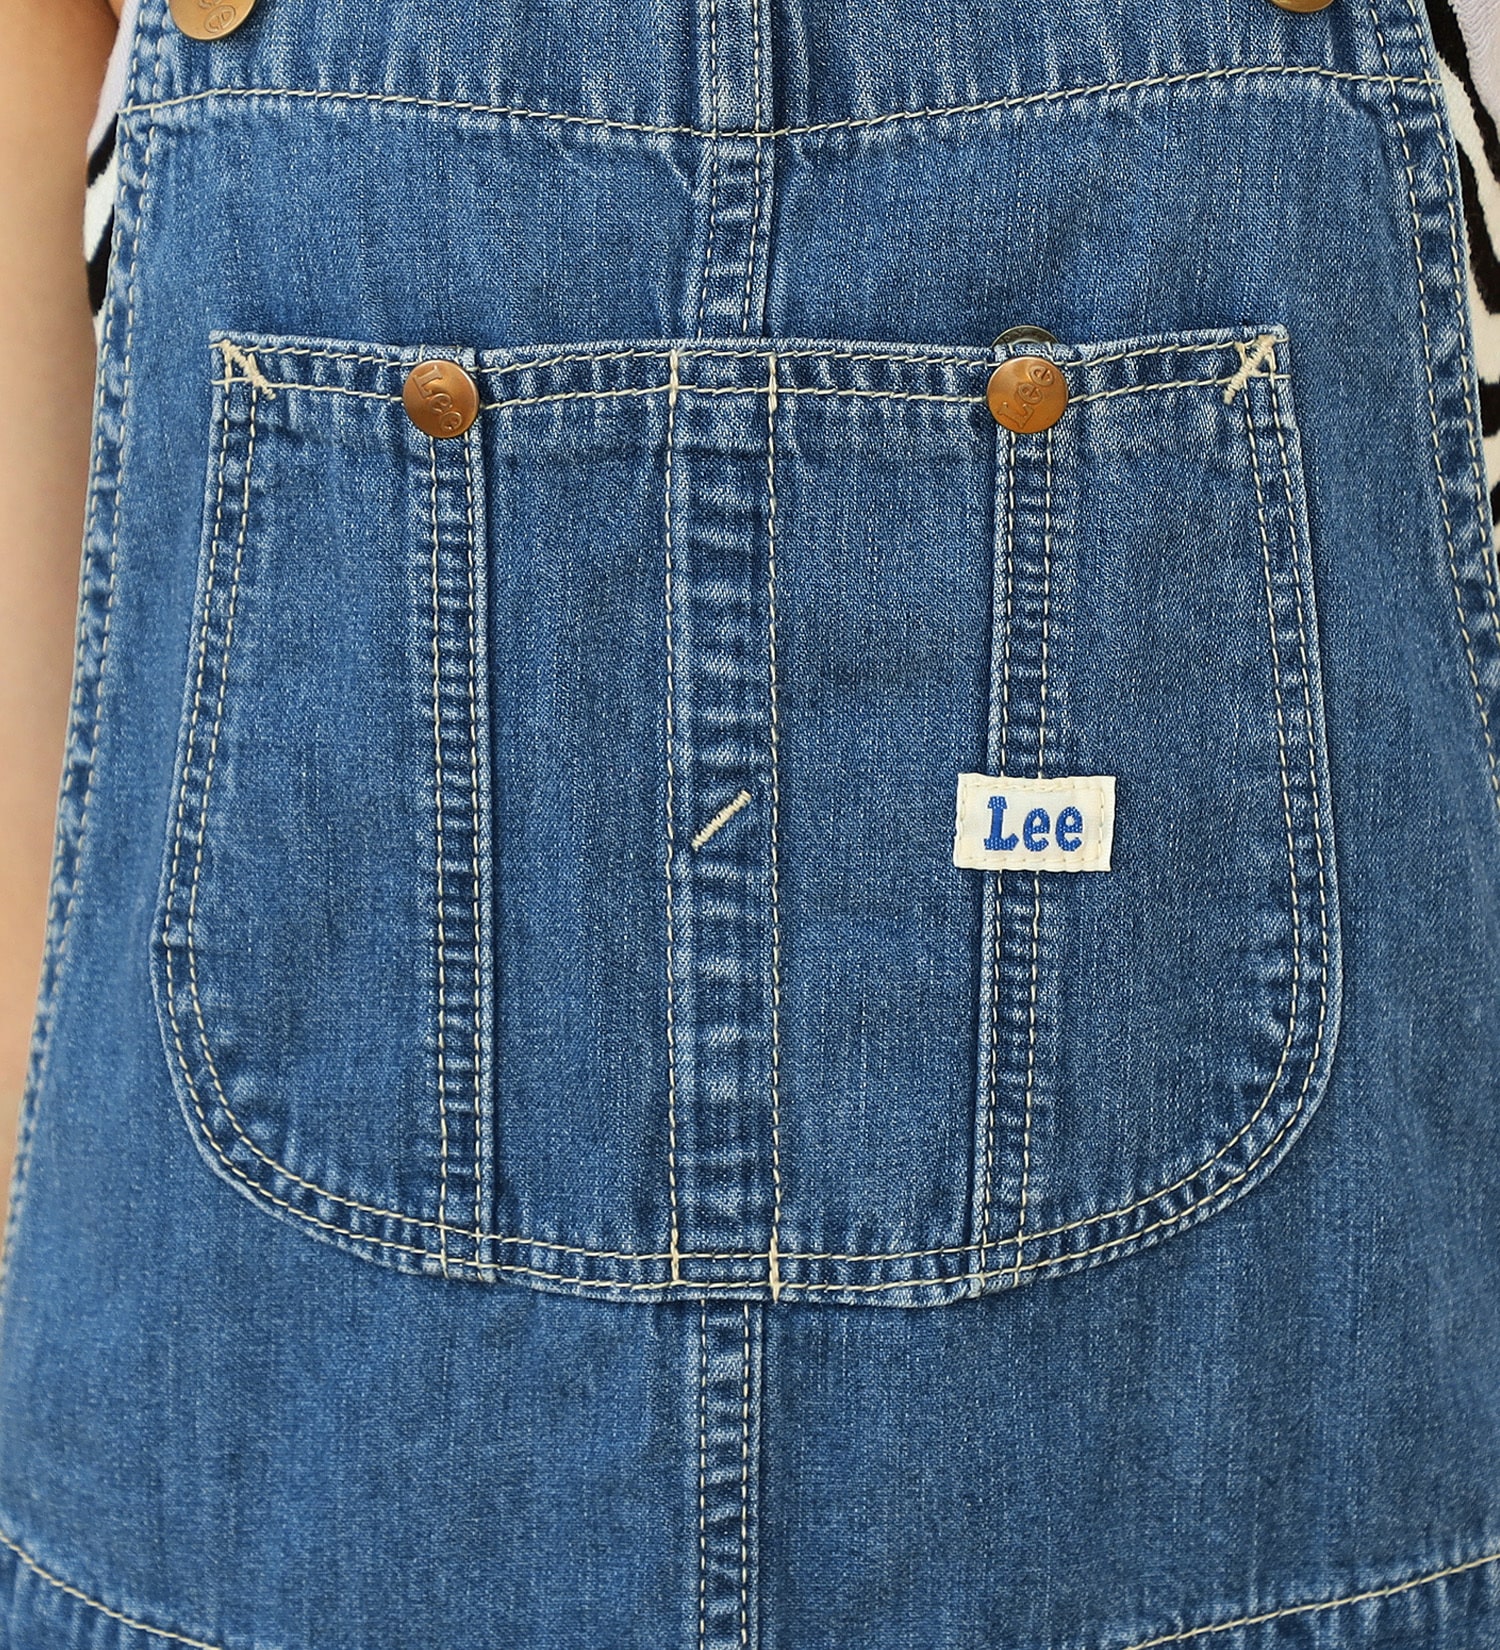 Lee(リー)の【130-160cm】キッズ ジャンパースカート|オールインワン/サロペット/オーバーオール/キッズ|中色ブルー